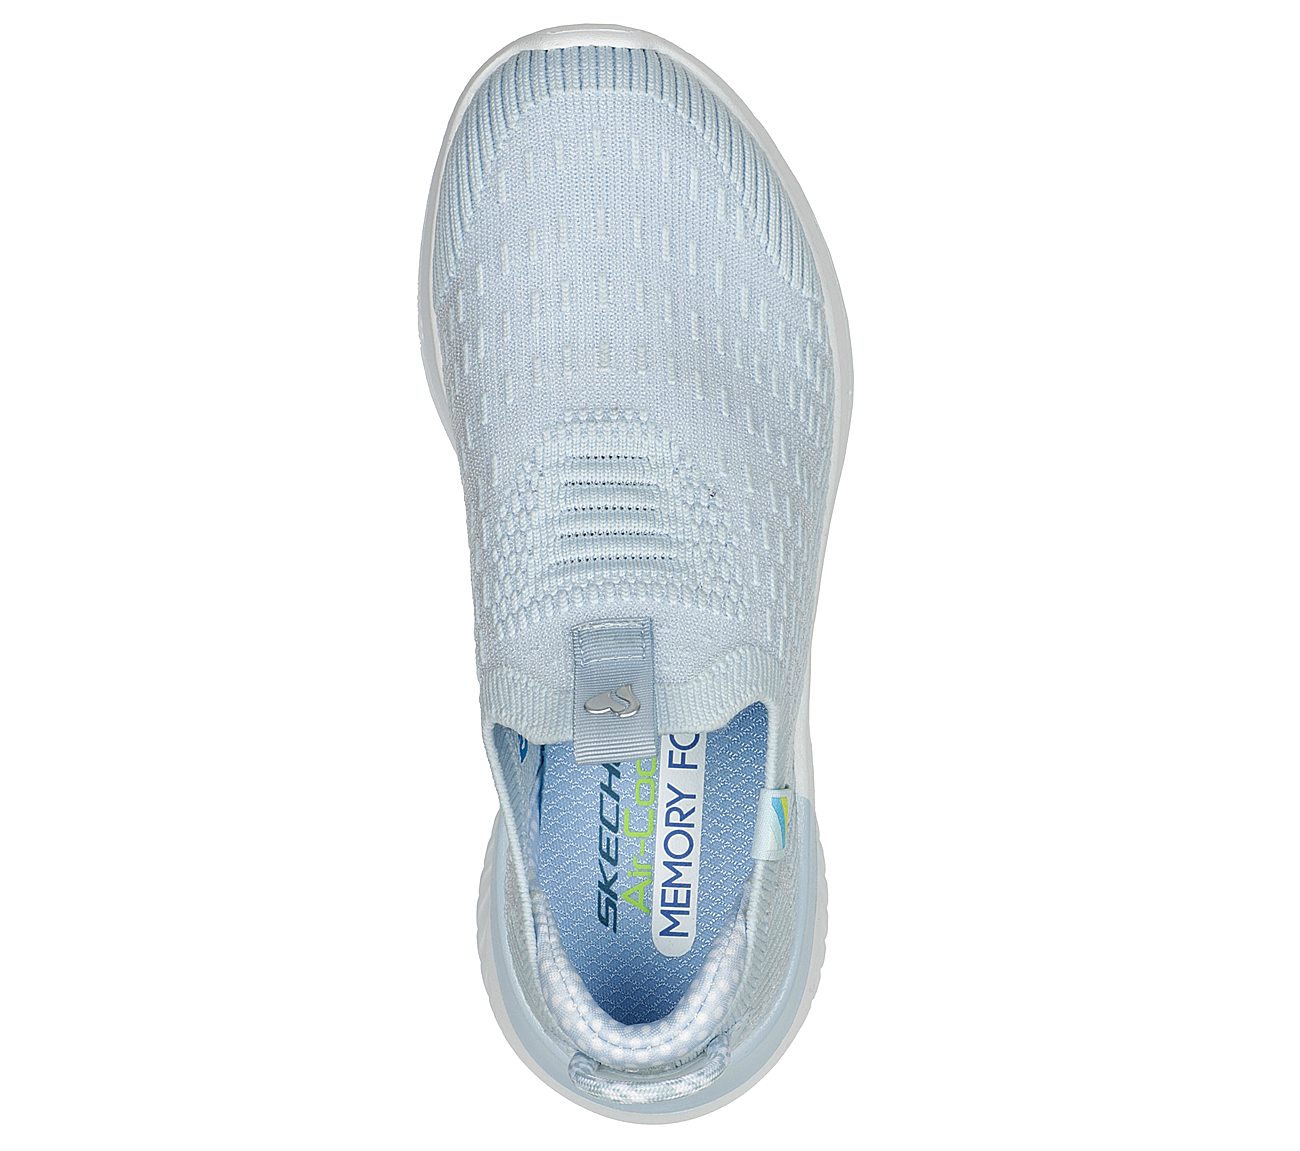 ULTRA FLEX 3.0 - HAPPY BRIGHT, LLIGHT BLUE Footwear Top View